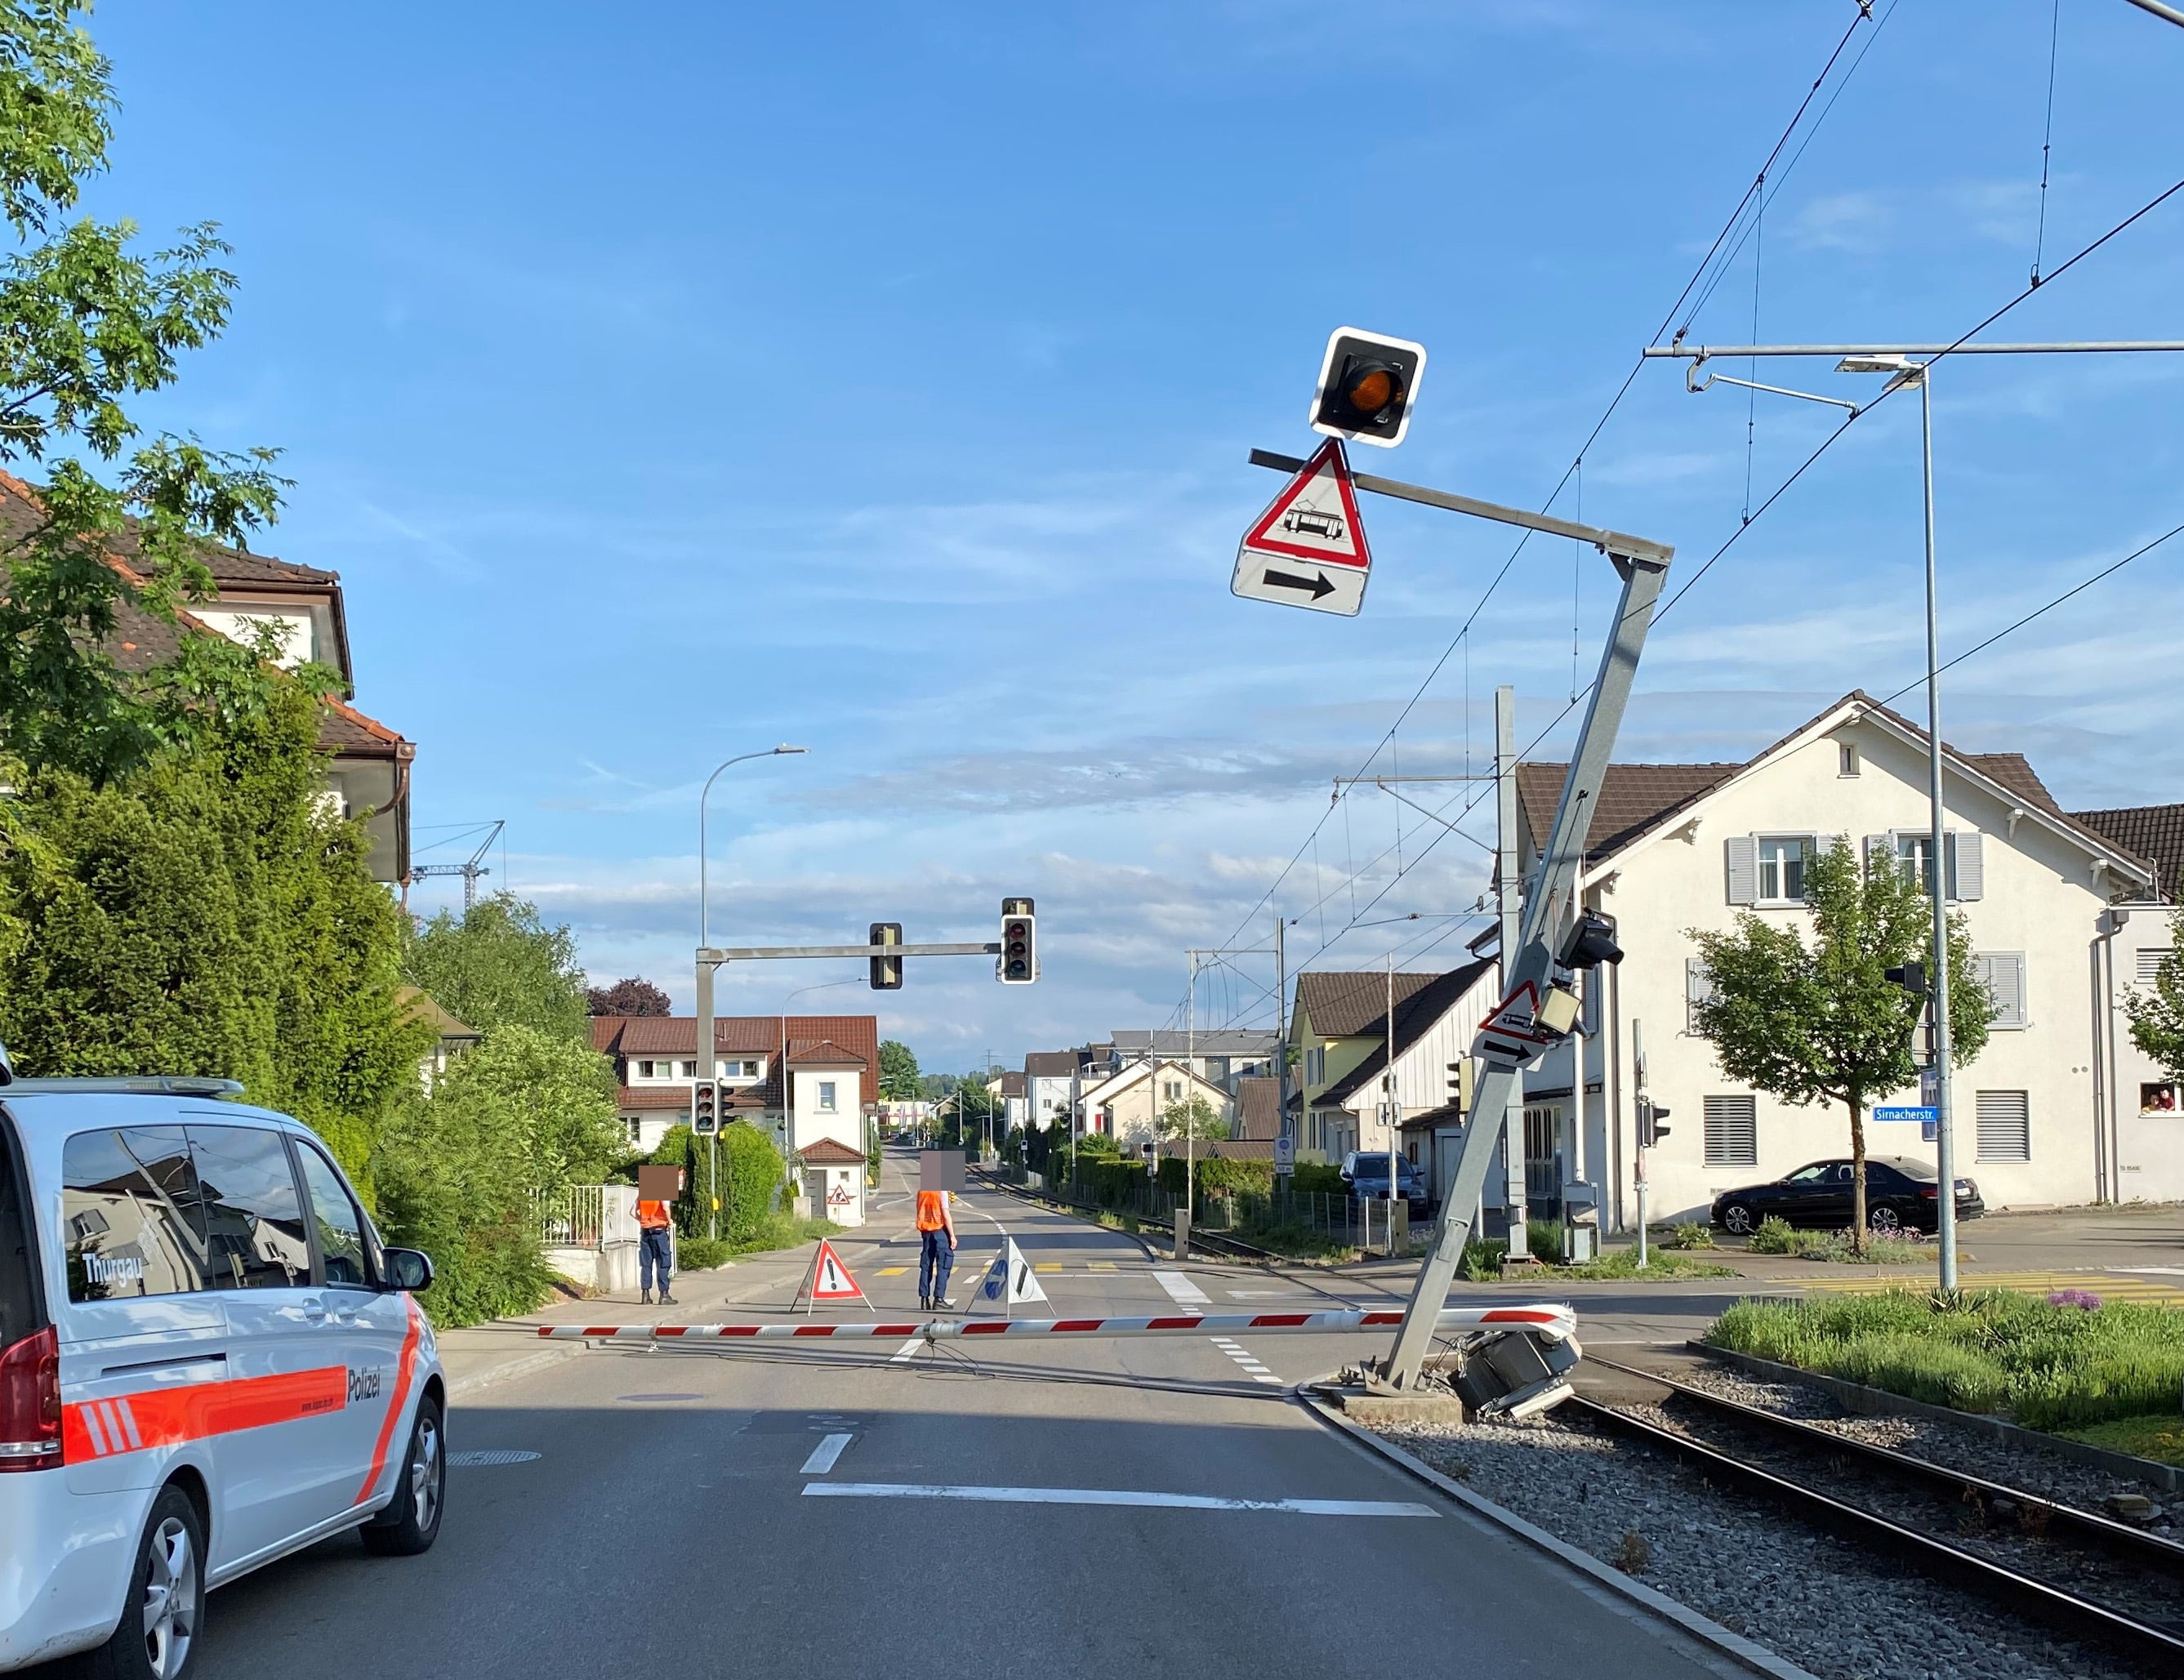 Münchwilen Traktor Selbstunfall alkoholisiert Bahnschranke Bahnverkehr unterbrochen